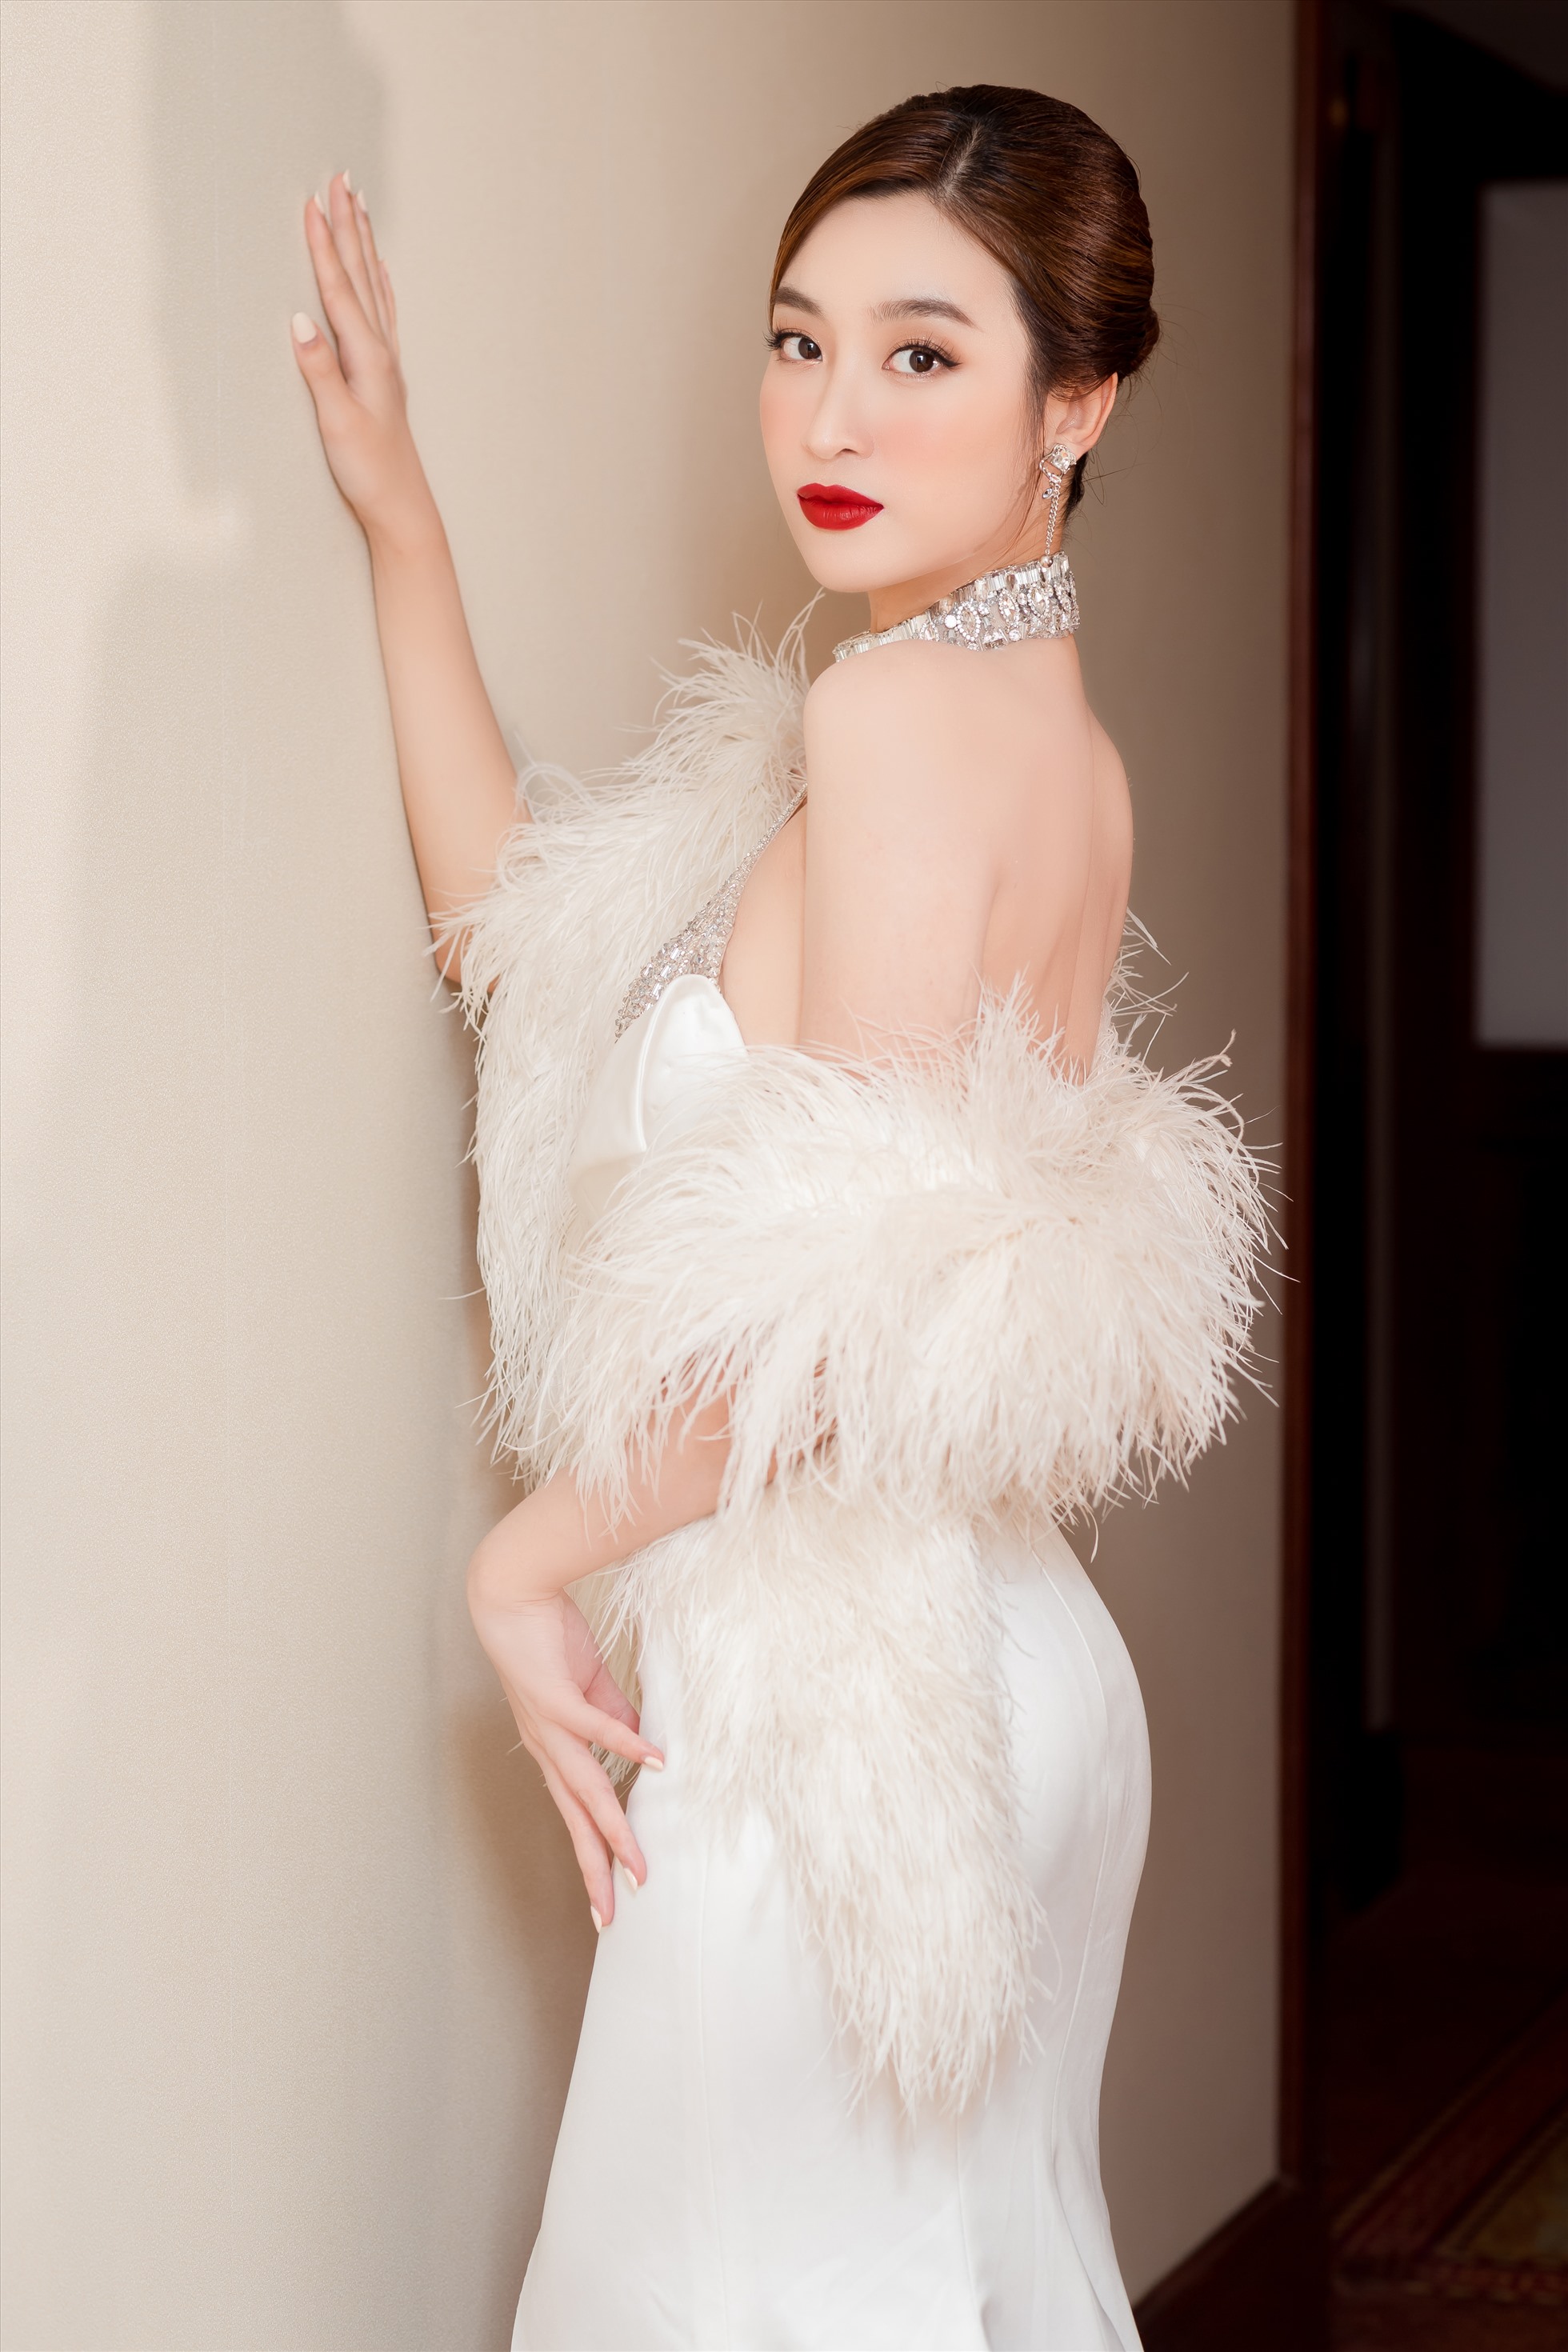 Đỗ Mỹ Linh sinh năm 1996, tại Hà Nội. Người đẹp đăng quang Hoa hậu Việt Nam 2016 và gây ấn tượng bởi vẻ đẹp nền nã, dịu dàng chuẩn con gái Hà Nội. Cô cũng từng giành giải thưởng Người đẹp nhân ái tại Miss World 2017. Ảnh: NVCC.